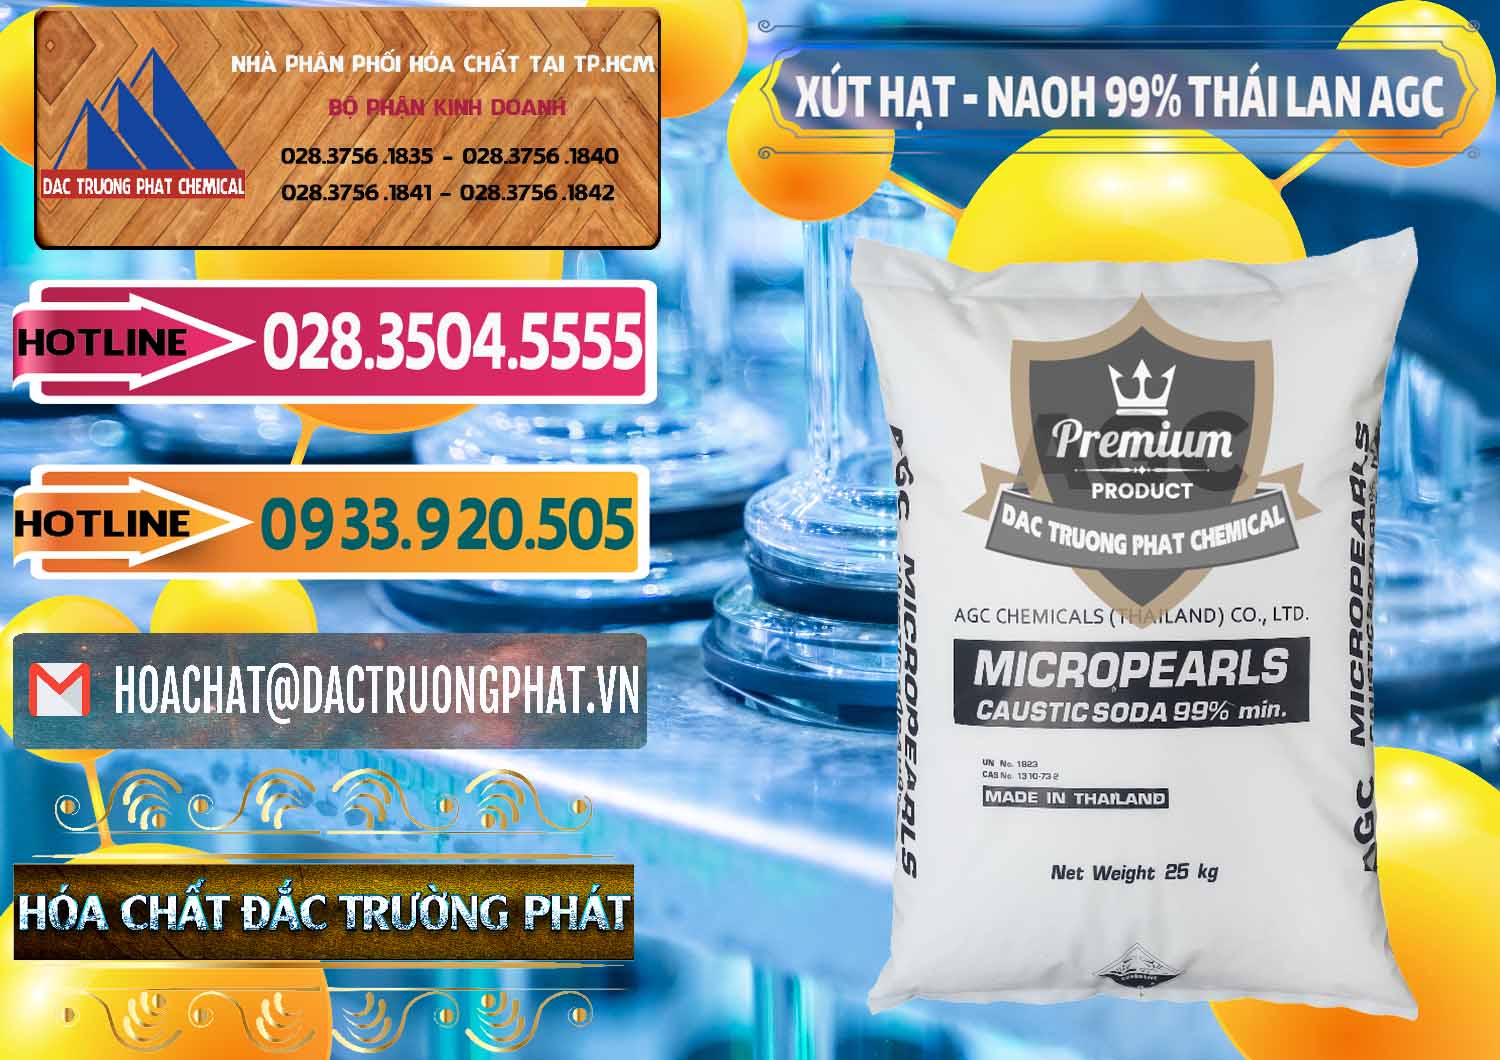 Đơn vị chuyên cung cấp và bán Xút Hạt - NaOH Bột 99% AGC Thái Lan - 0168 - Chuyên cung cấp ( phân phối ) hóa chất tại TP.HCM - dactruongphat.vn